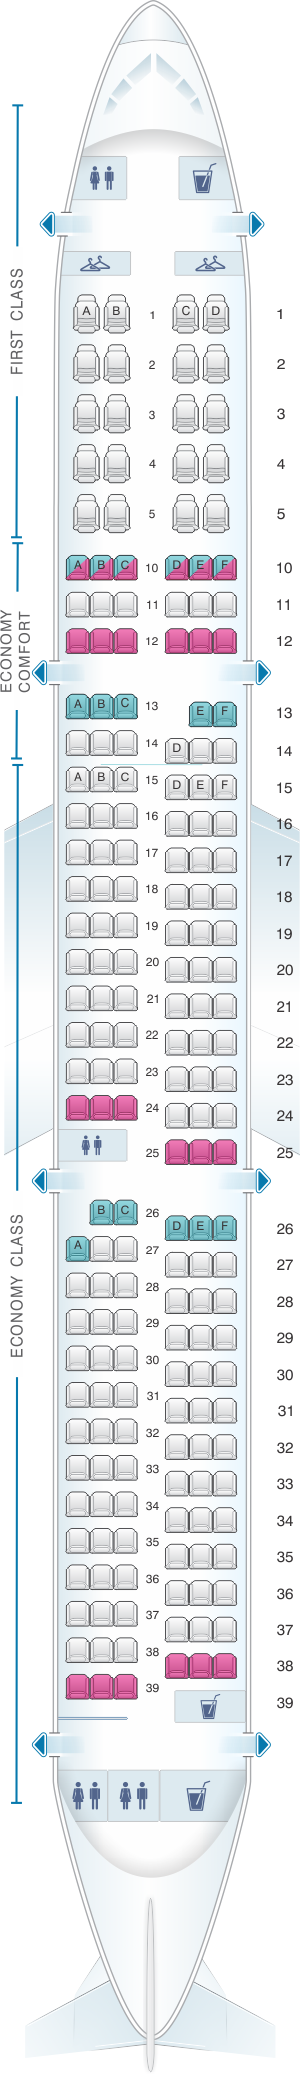 Seat Map Airbus A321 | SeatMaestro.com